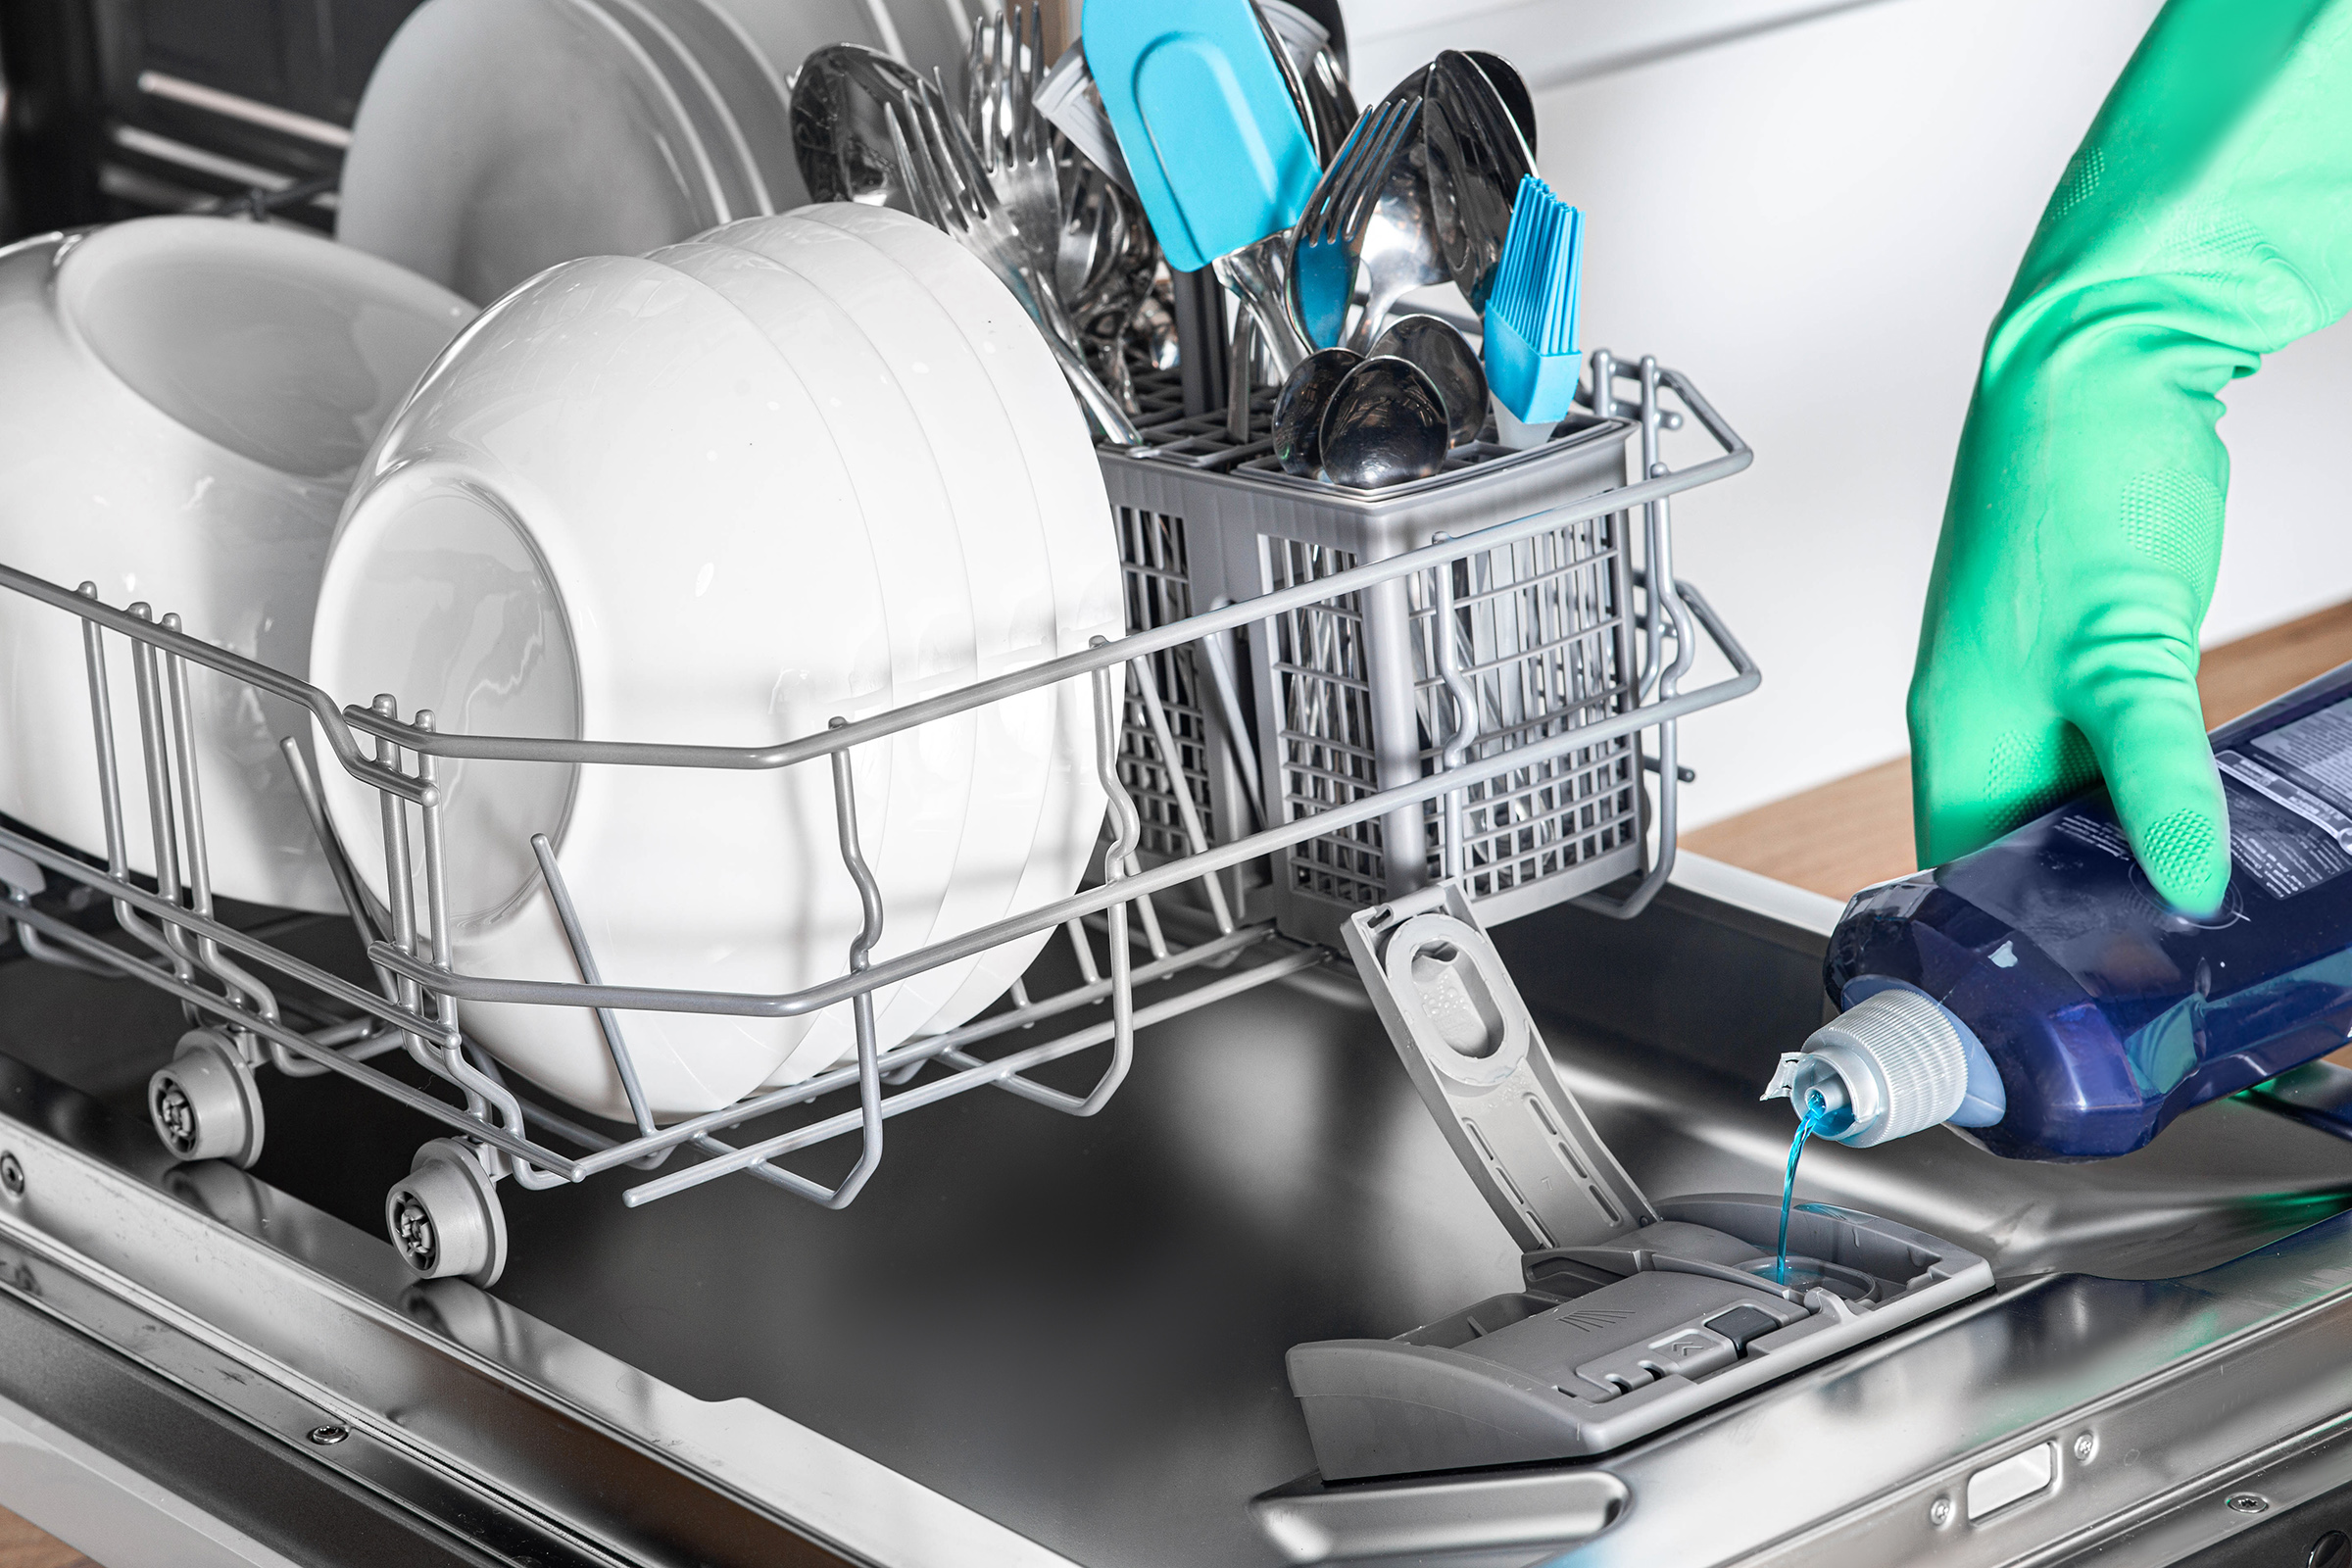 Сборка посудомоечной машины. Rinse Aid for Bosch Dishwasher. Средства для ополаскивания посудомоечной машины Майнфелд. Мойка с ополаскивателем для стаканов. Посуда моющие машина с фоном.